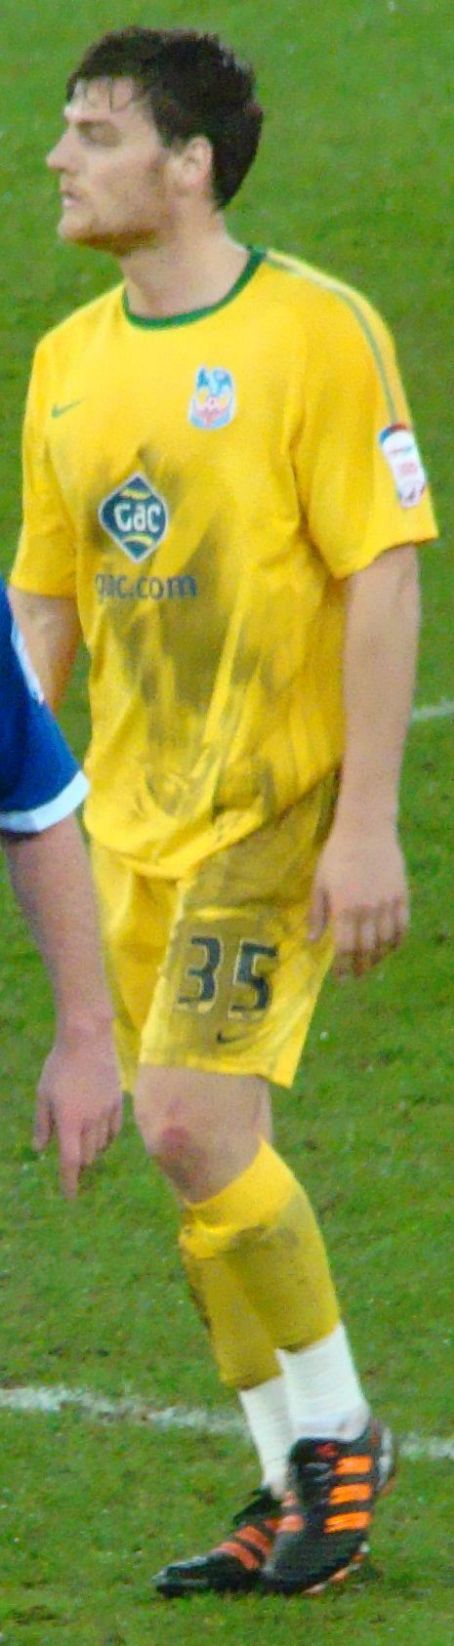 Chris Martin (footballer born 1988)